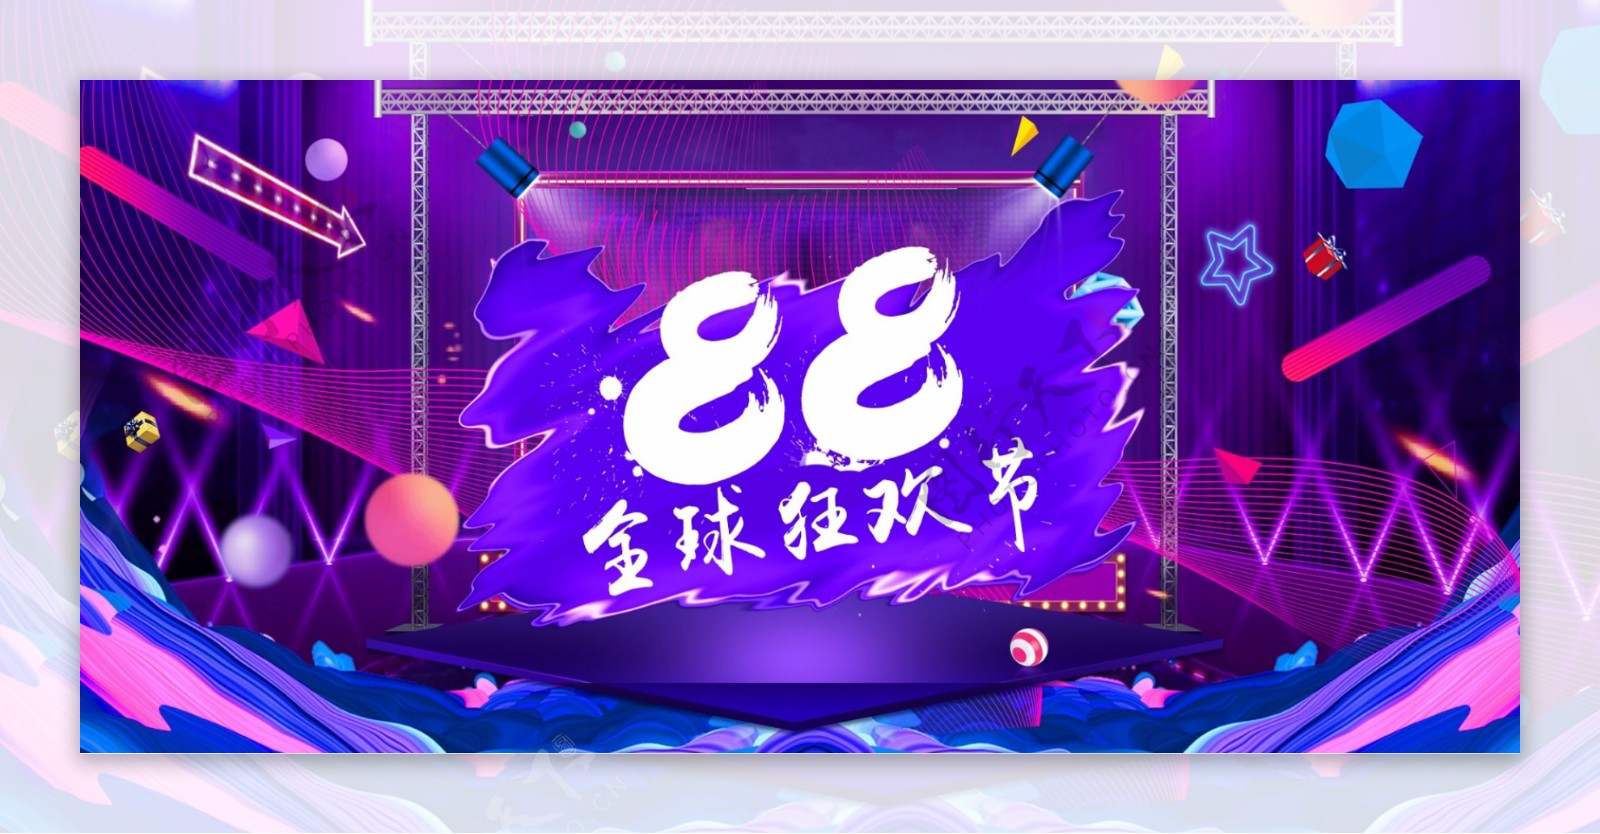 电商88全球狂欢炫酷紫色舞台霓虹促销海报